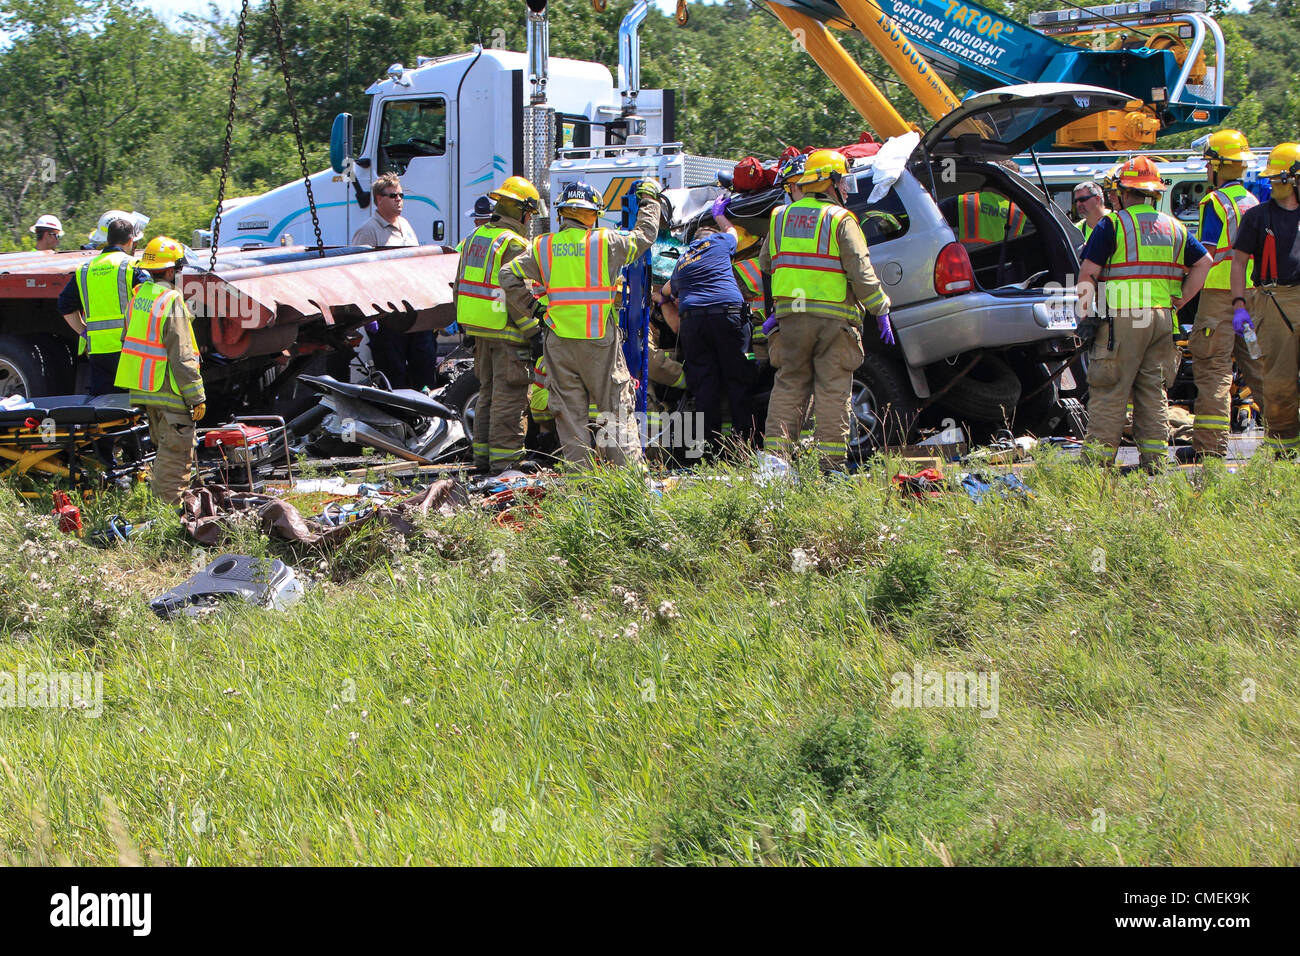 Lunes, 30 de julio, 2012 -- Los trabajadores de emergencia intenta liberar al conductor de un vehículo utilitario deportivo que se estrelló en la parte trasera de un semirremolque plataforma plana en la I-94 cerca de Mile Marker 6 en Hudson, Wisconsin, Estados Unidos. Al menos una persona murió en el accidente. Foto de stock